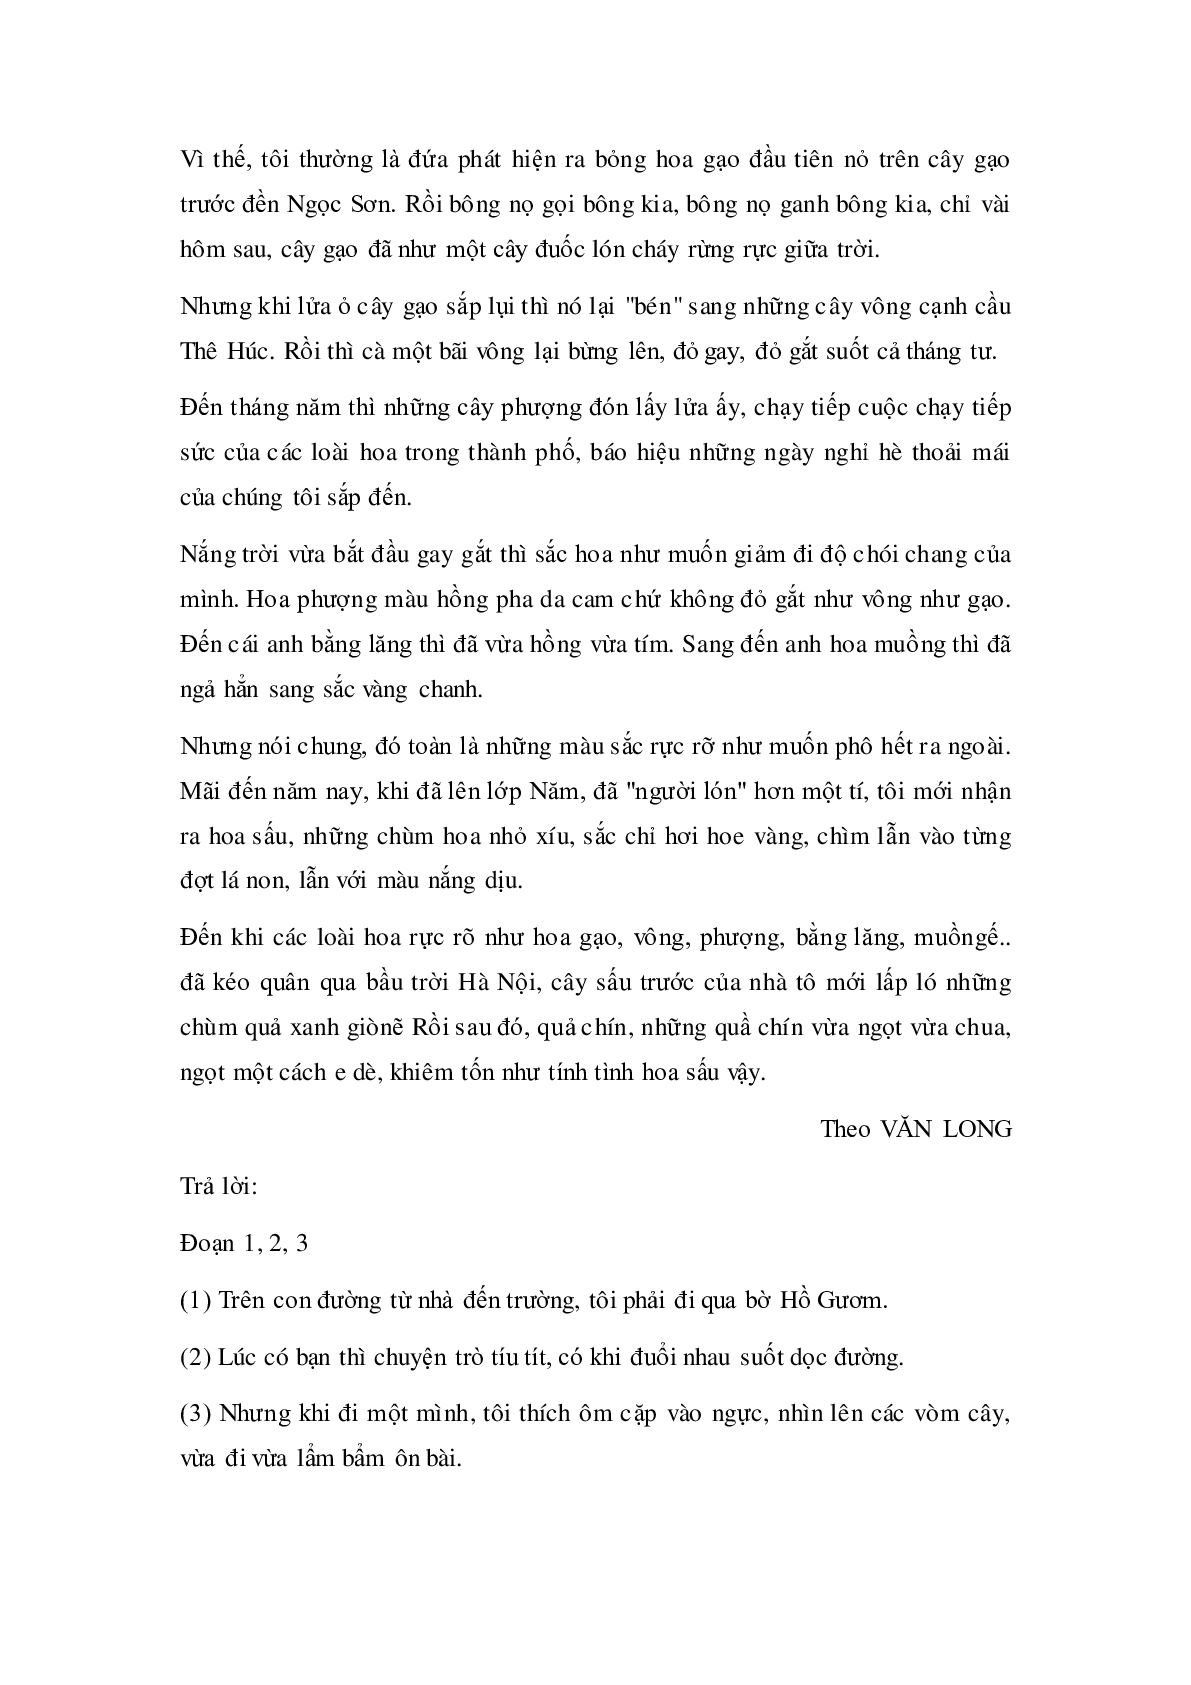 Soạn Tiếng Việt lớp 5: Luyện từ và câu: Liên kết các câu trong bài bằng từ ngữ nối mới nhất (trang 2)